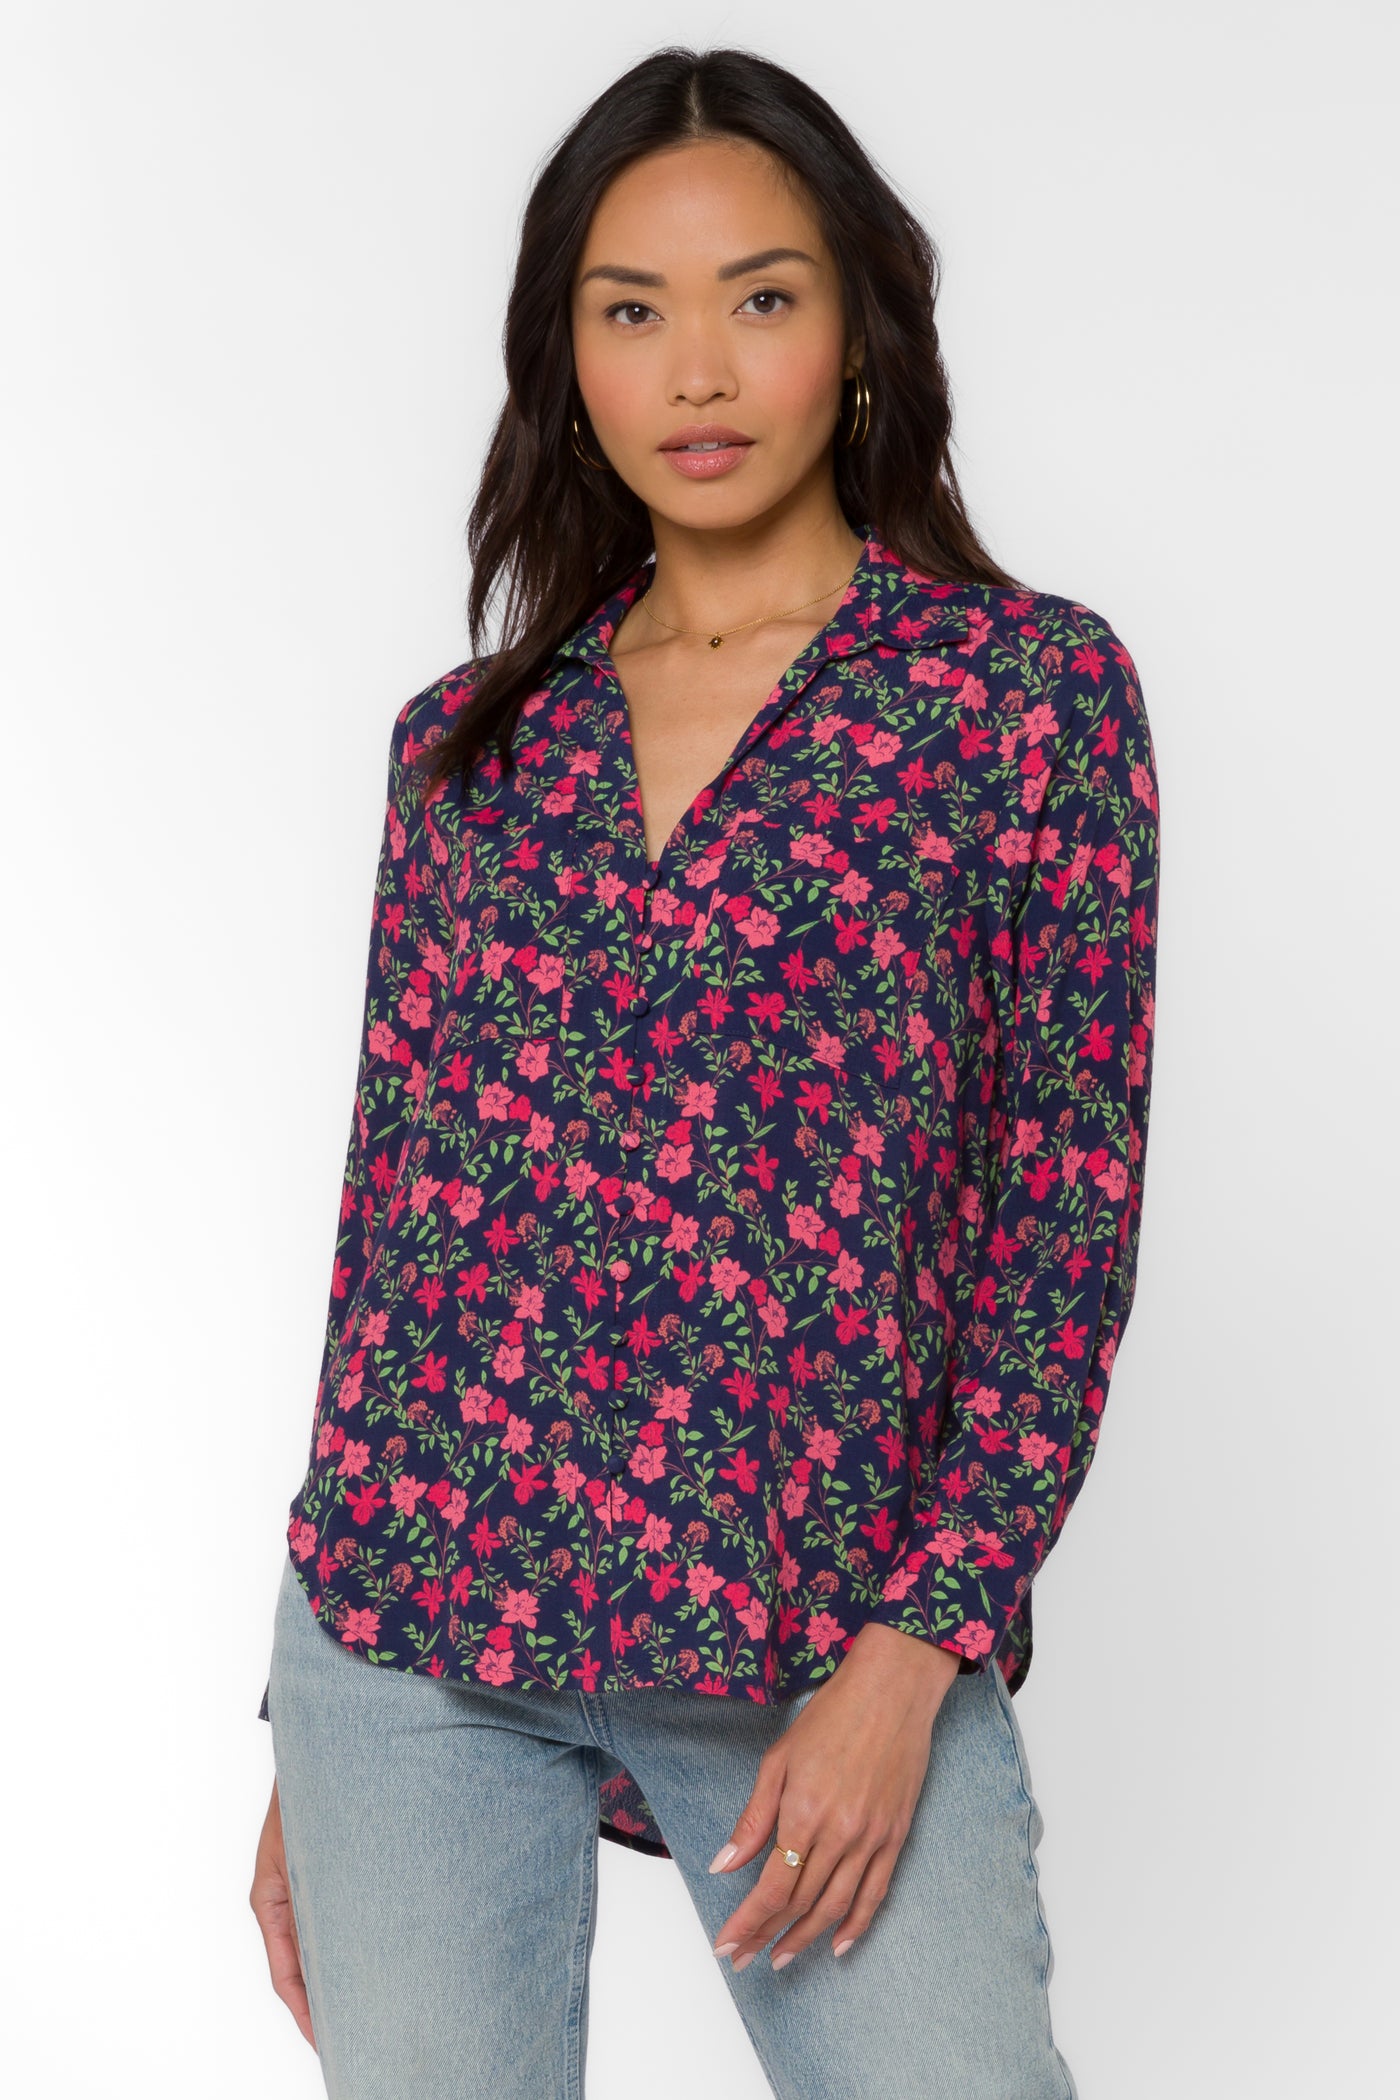 Eleni Ditsy Floral Shirt - Tops - Velvet Heart Clothing